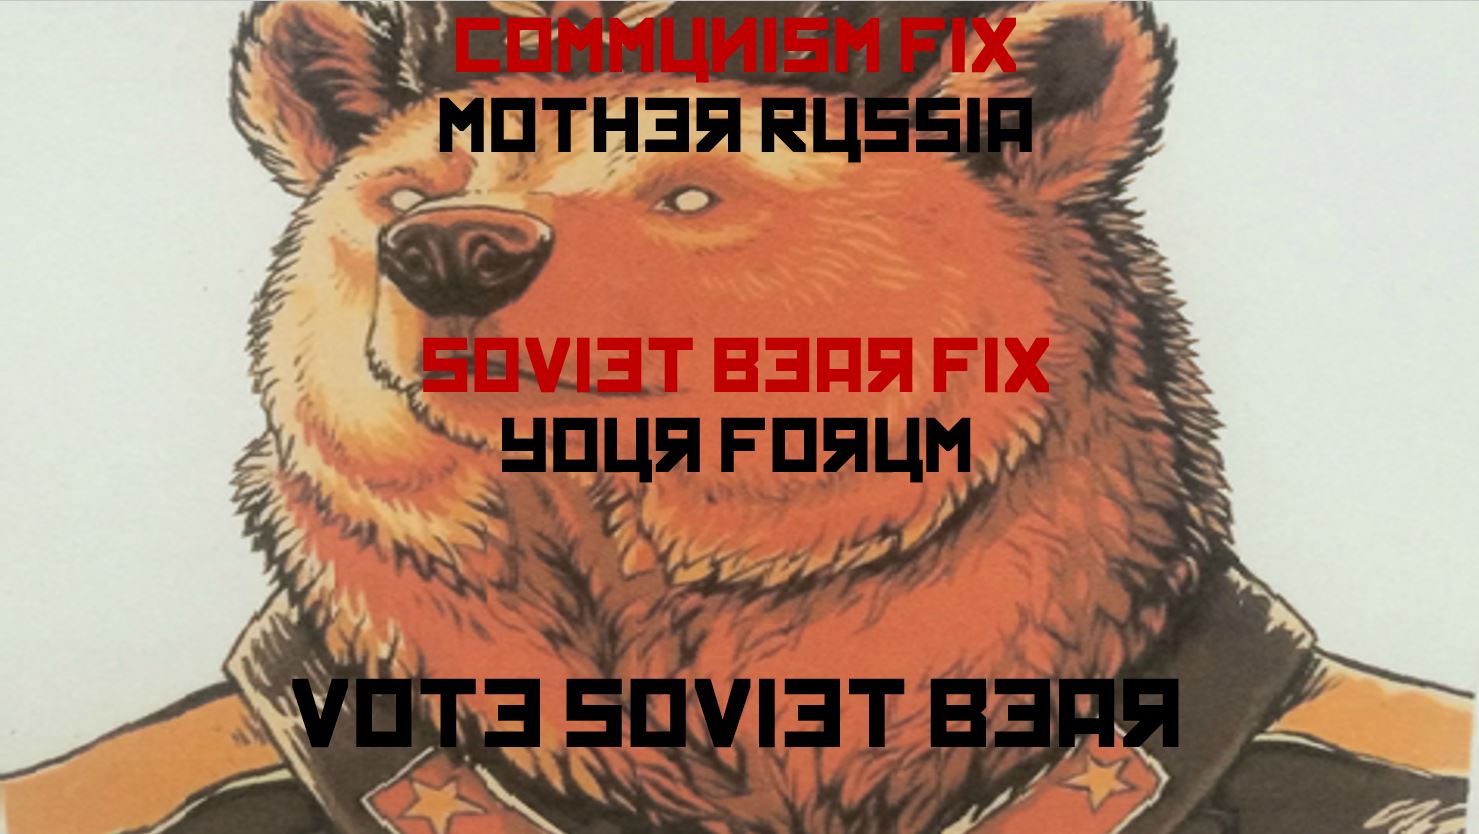 Soviet Bear 8